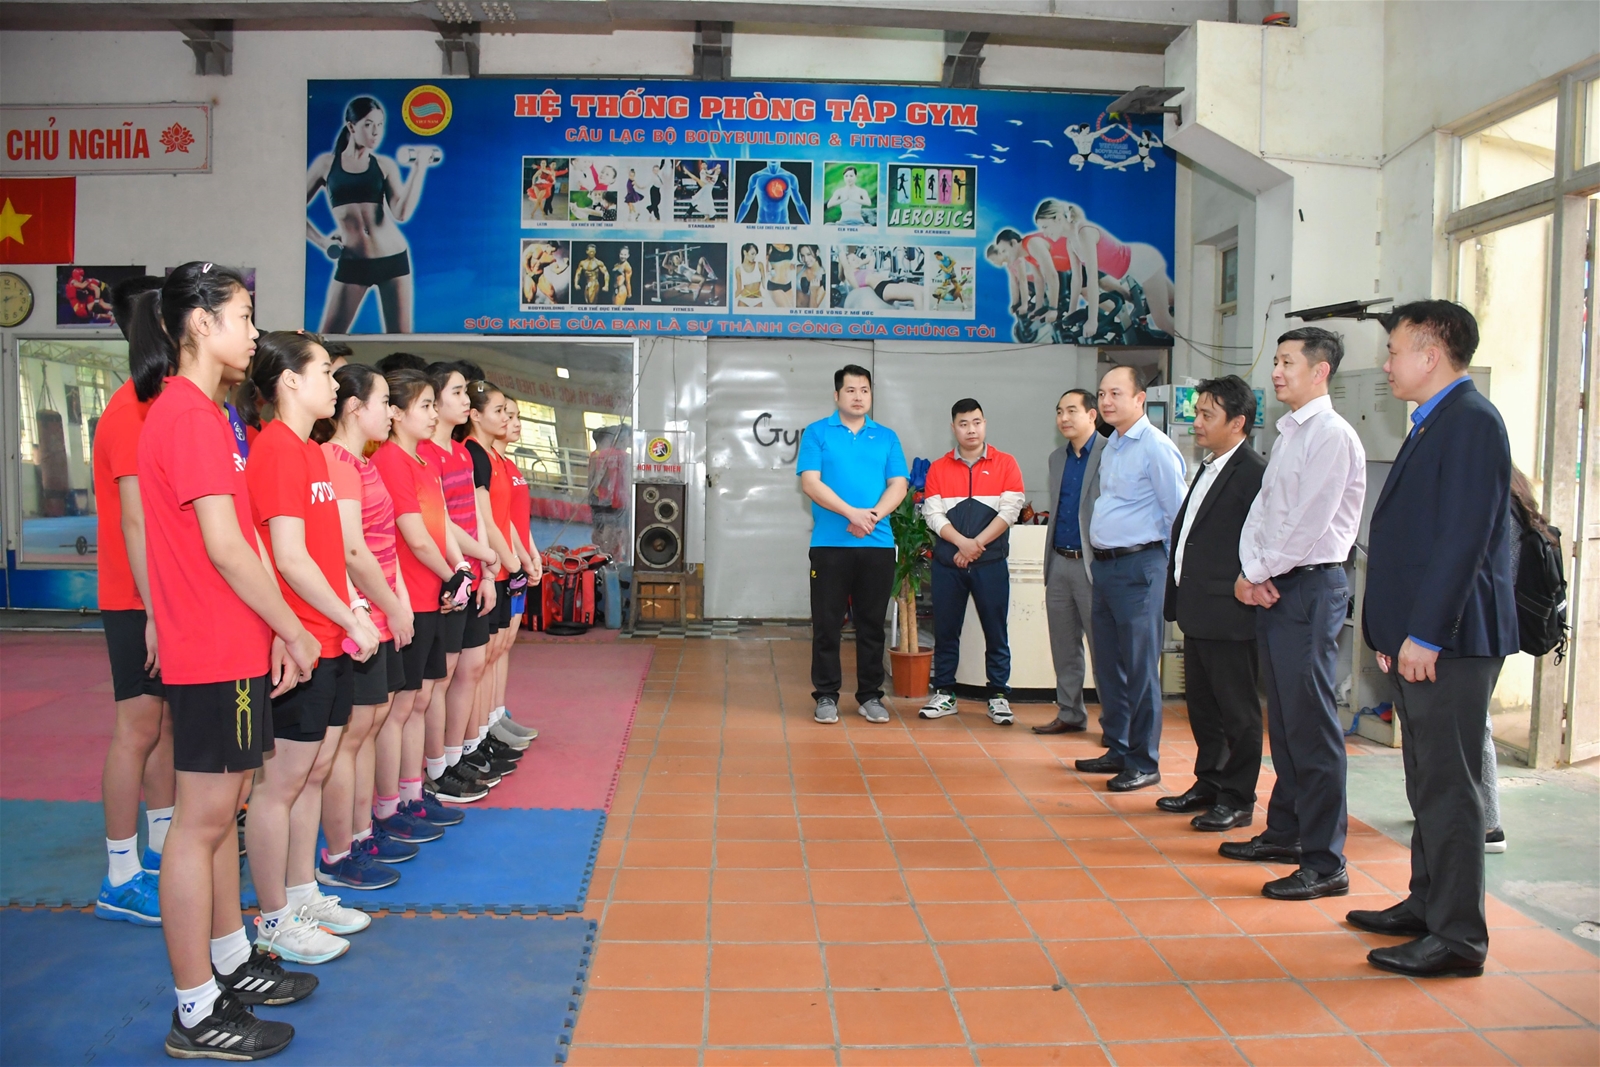 Thứ trưởng Bộ VHTTDL Hoàng Đạo Cương sang thăm và làm việc tại Trường Đại học TDTT Bắc Ninh - Ảnh 2.